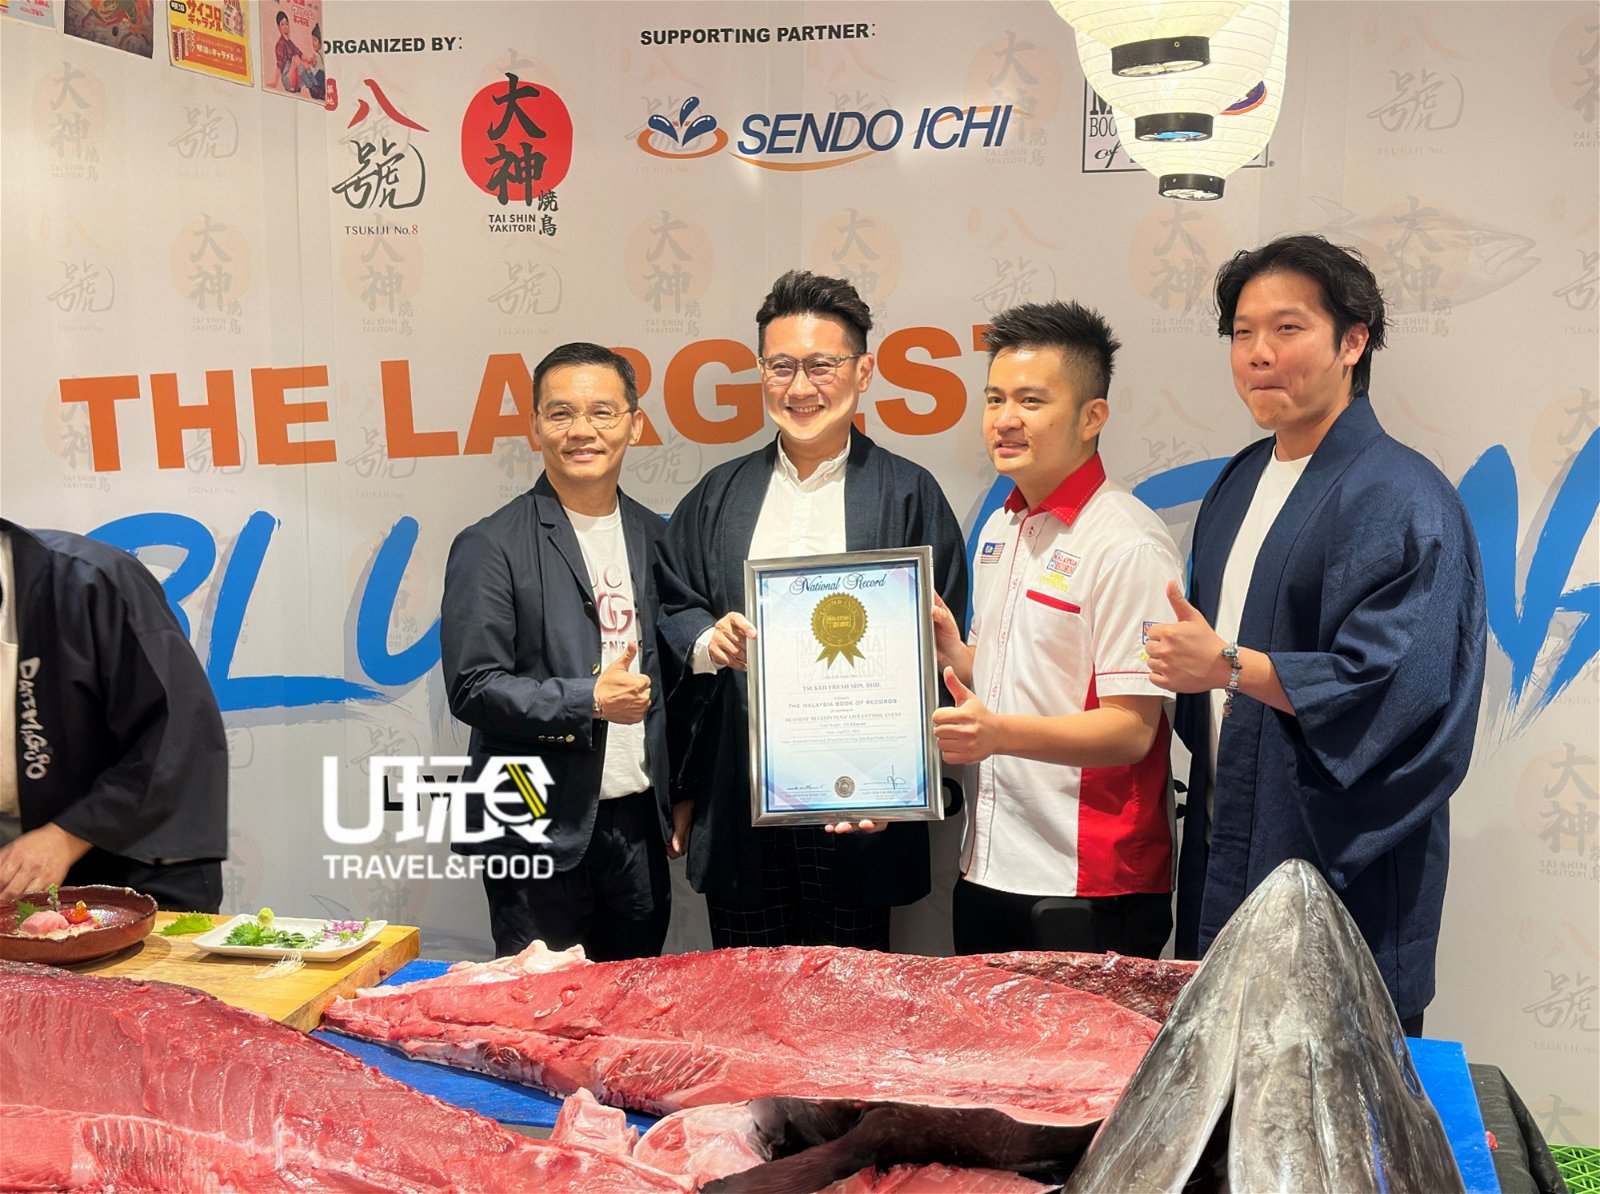 马来西亚纪录大全营销与活动副总经理黄程运颁发“最重蓝鳍金枪鱼现场切割活动”奖状，给予两家公司代表。